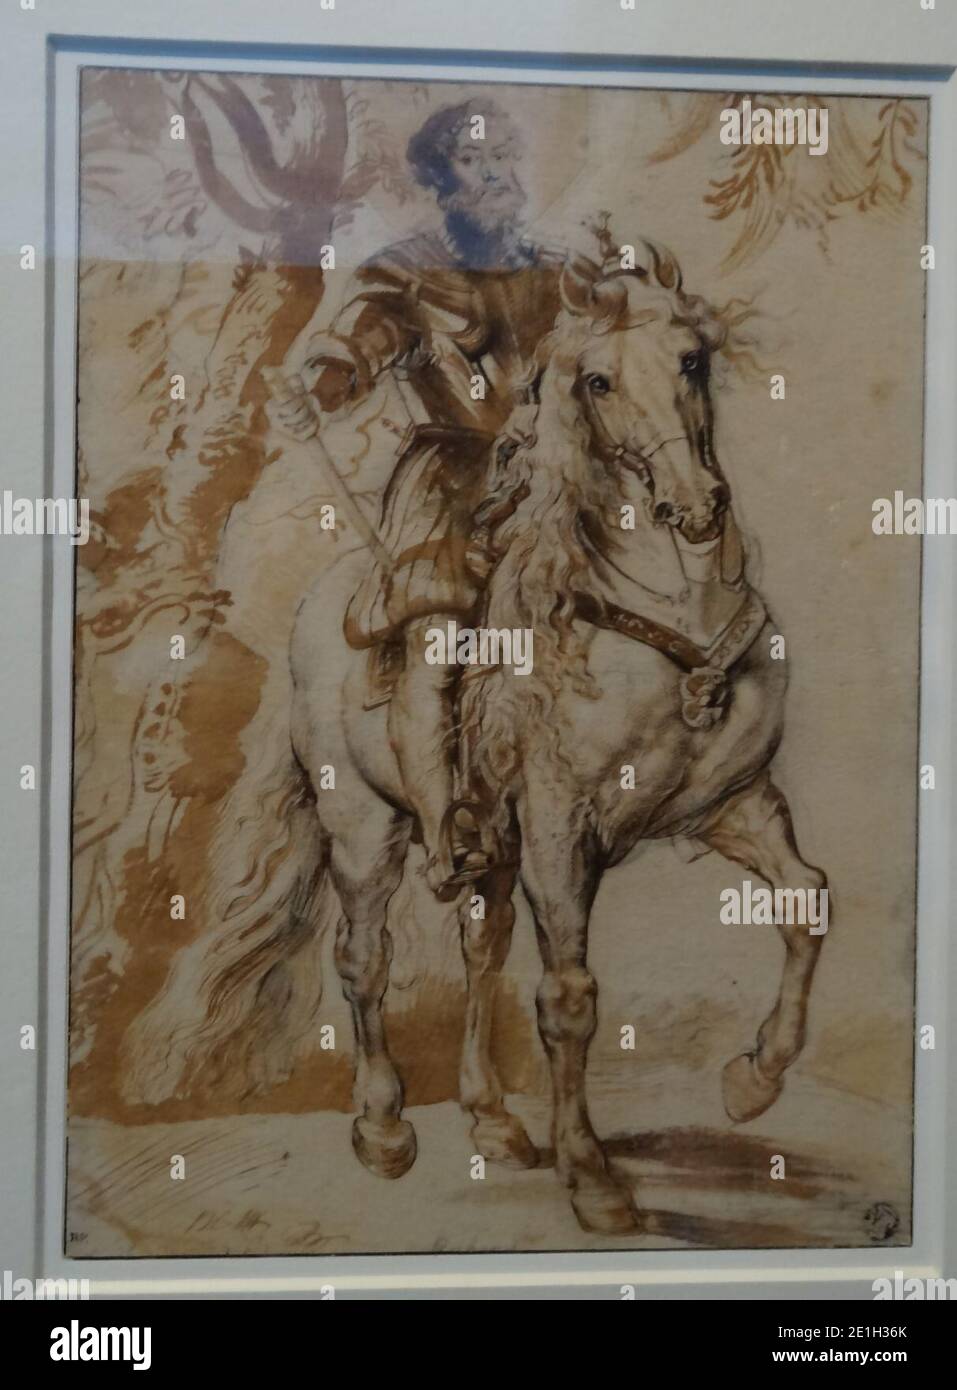 Louvre-Lens - L'Europe de Rubens - 017 - Francisco de Sandoval y Rojas, duc de Lerme, à cheval. Stock Photo